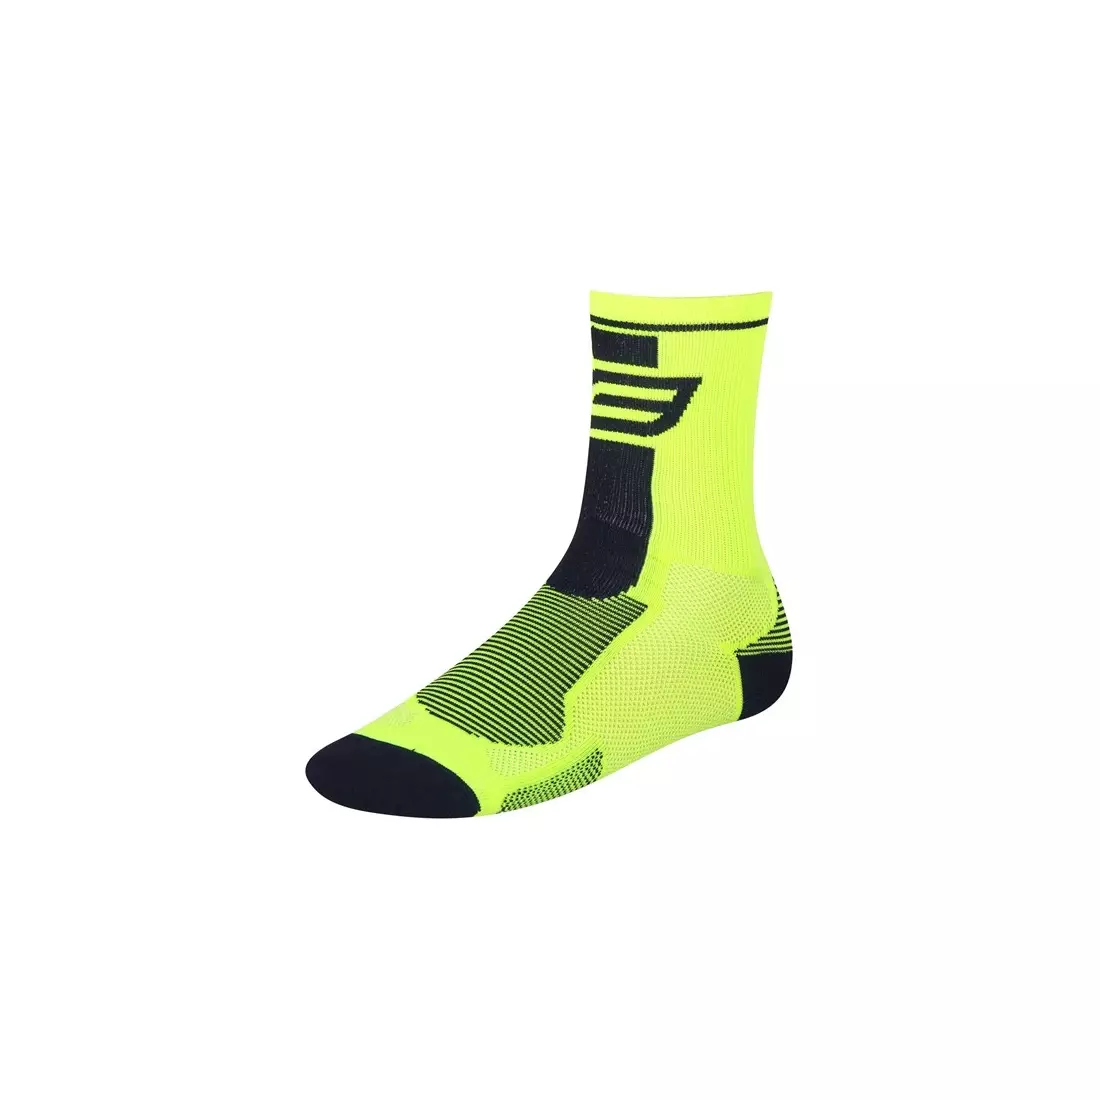 FORCE LONG sports socks Fluor